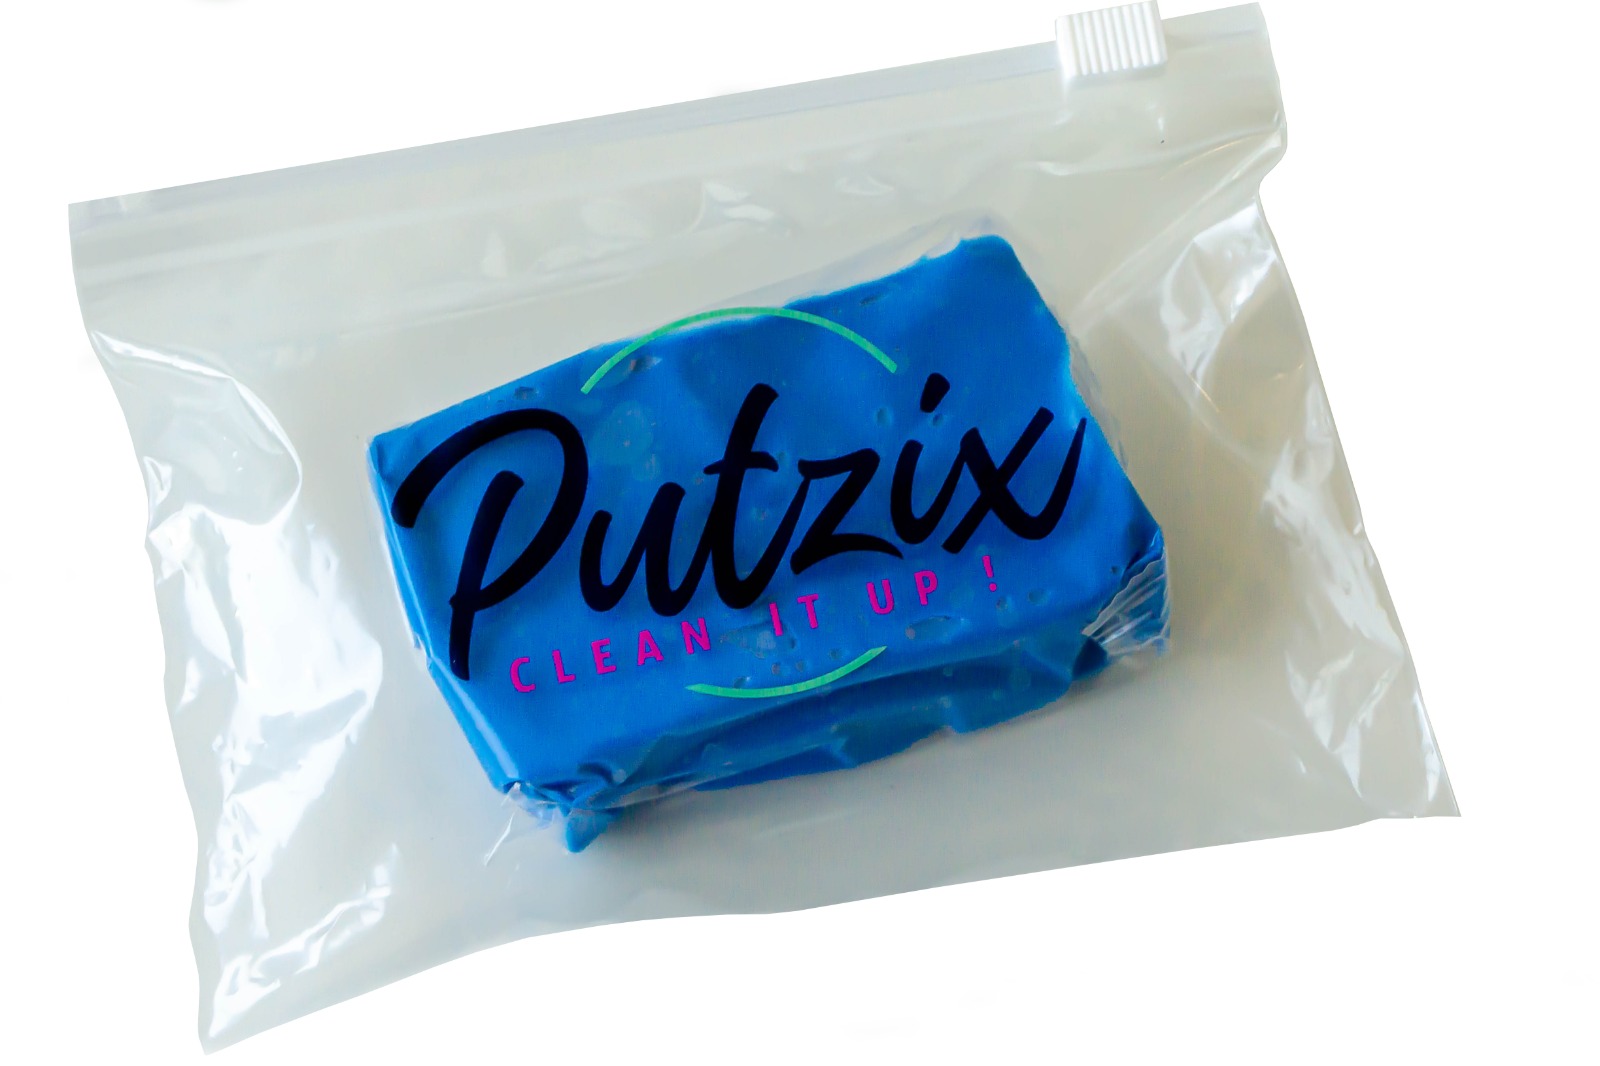 PutziX - Reinigungsknete (100g)